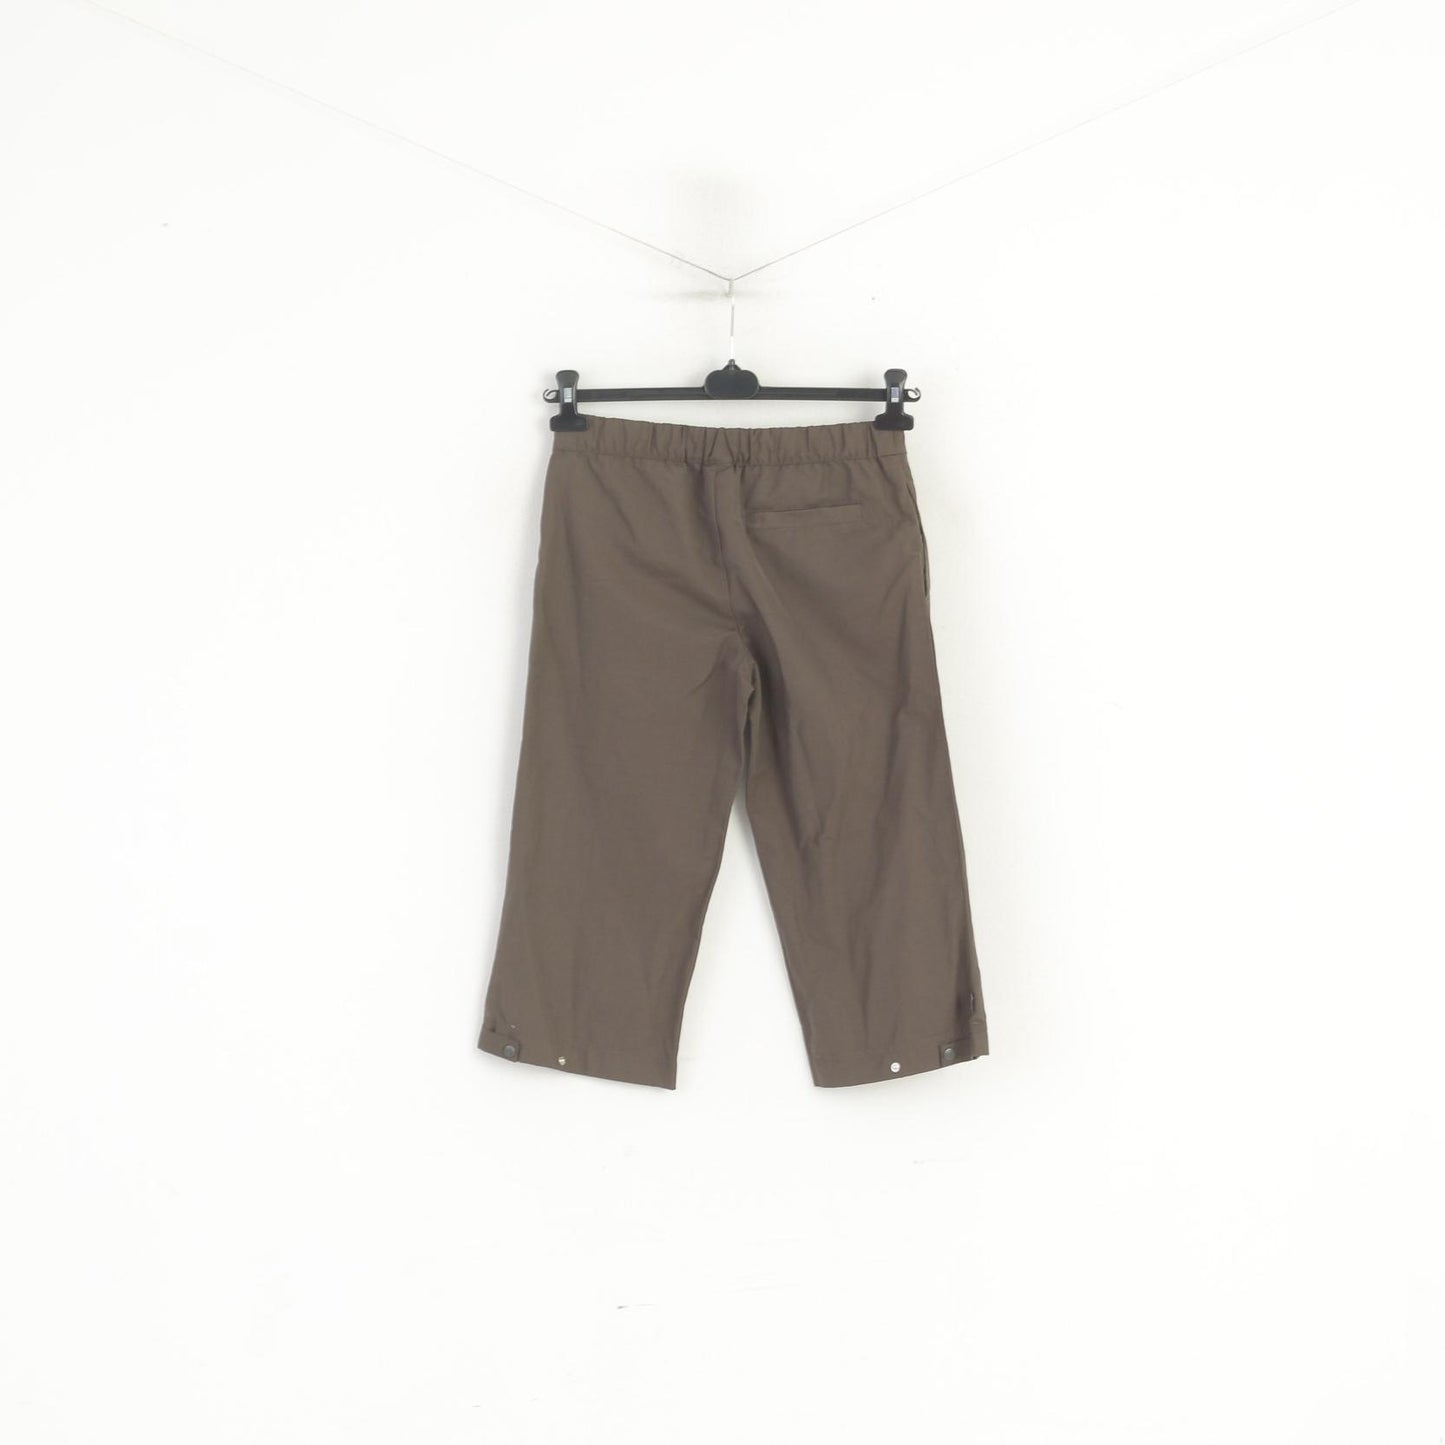 Adidas Women 8 36 S Cropped Pants Brown Cotton Sportswear Capri